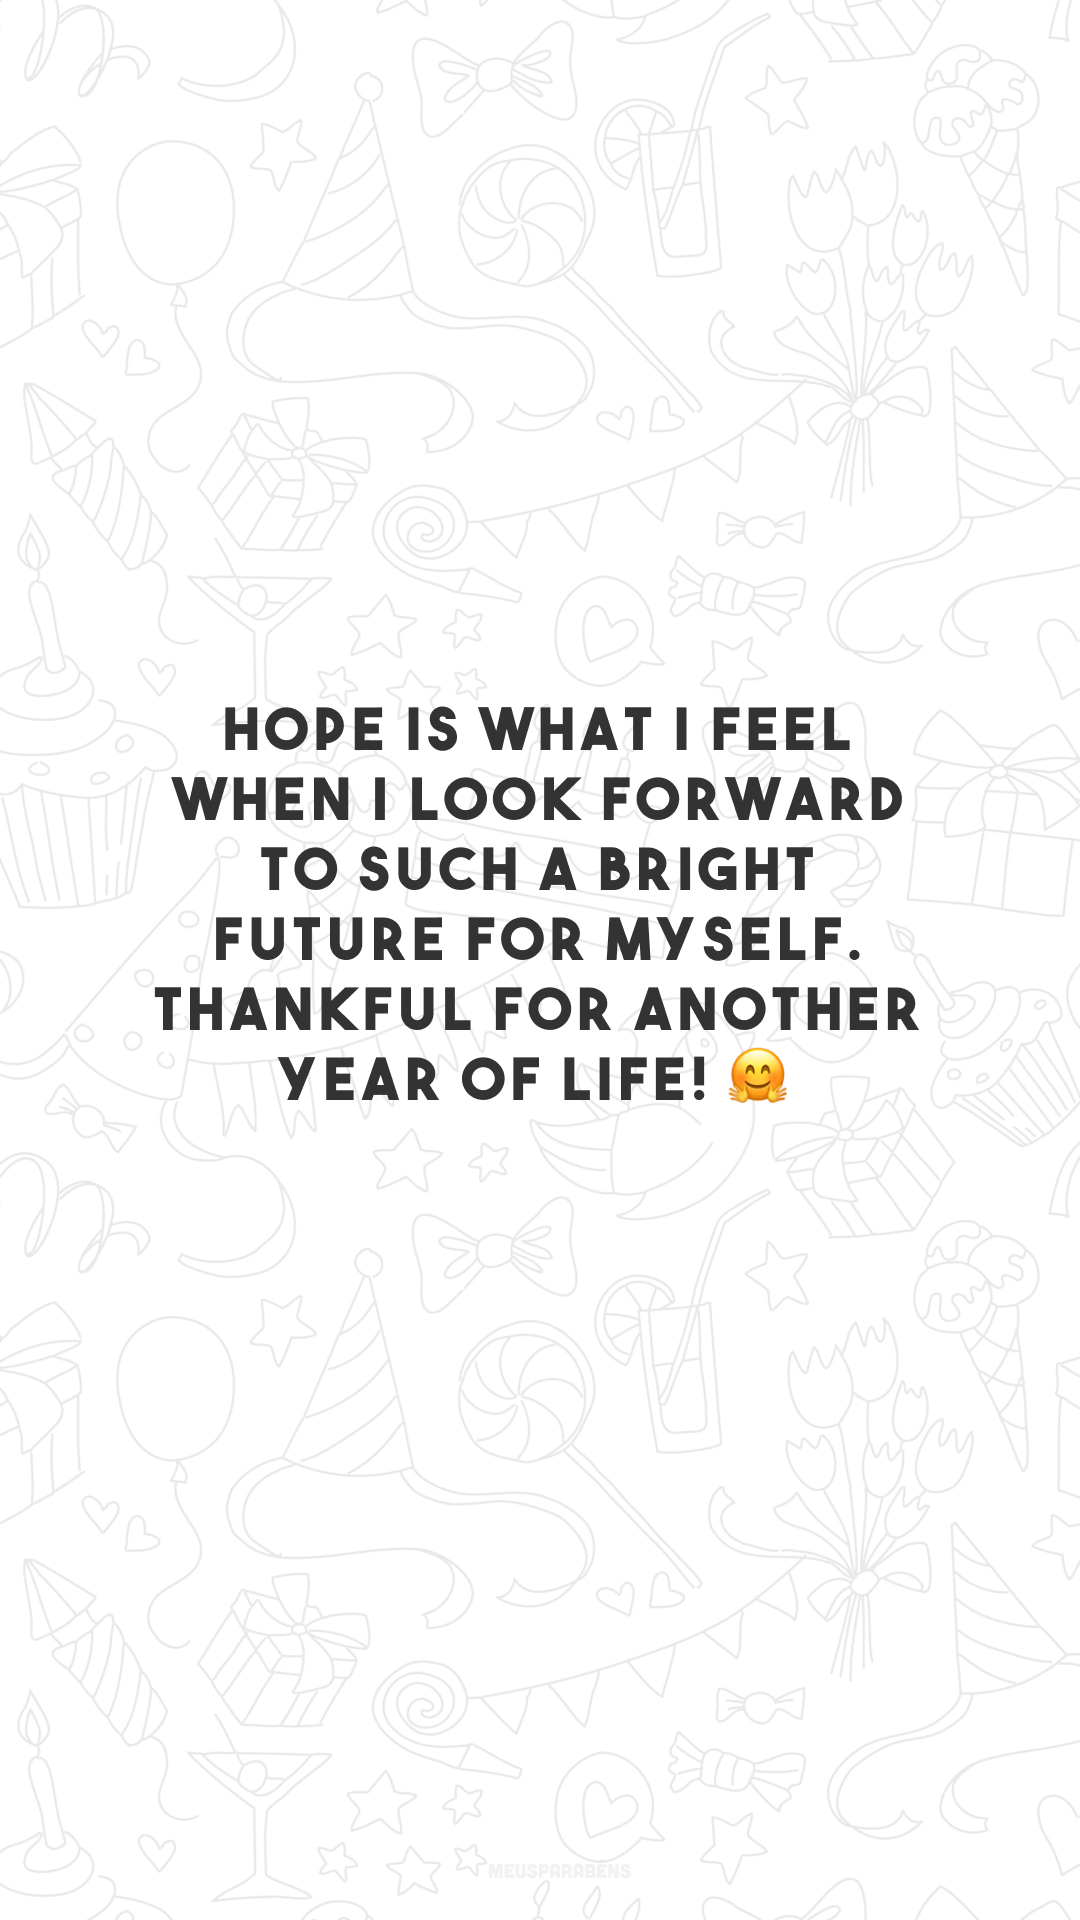 Hope is what I feel when I look forward to such a bright future for myself. Thankful for another year of life! 🤗

<p>(Esperança é o que eu sinto ao aguardar um futuro tão brilhante pra mim. Grato por mais um ano de vida!)<p>